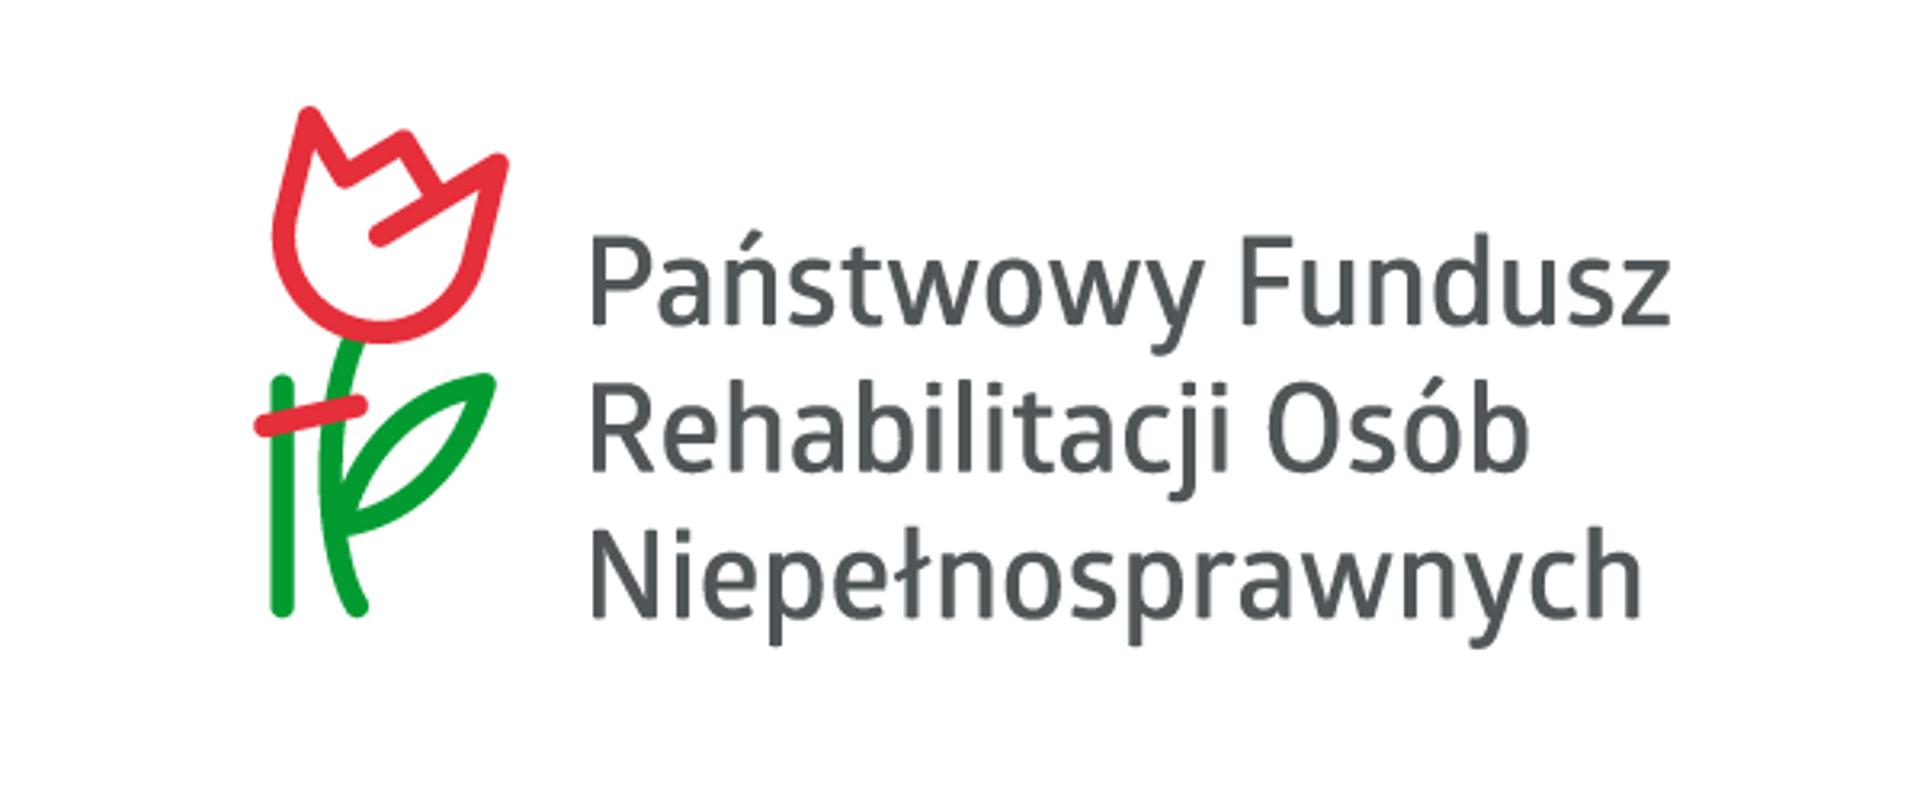 Logotyp Państwowego Funduszu Rehabilitacji Osób Niepełnosprawnych zawierający piktogram tulipana